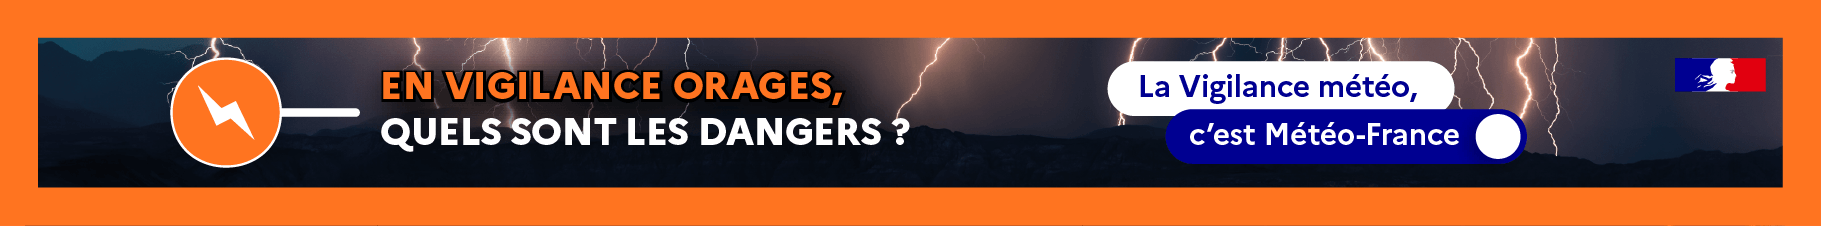 En vigilance orages, quels sont les dangers ?